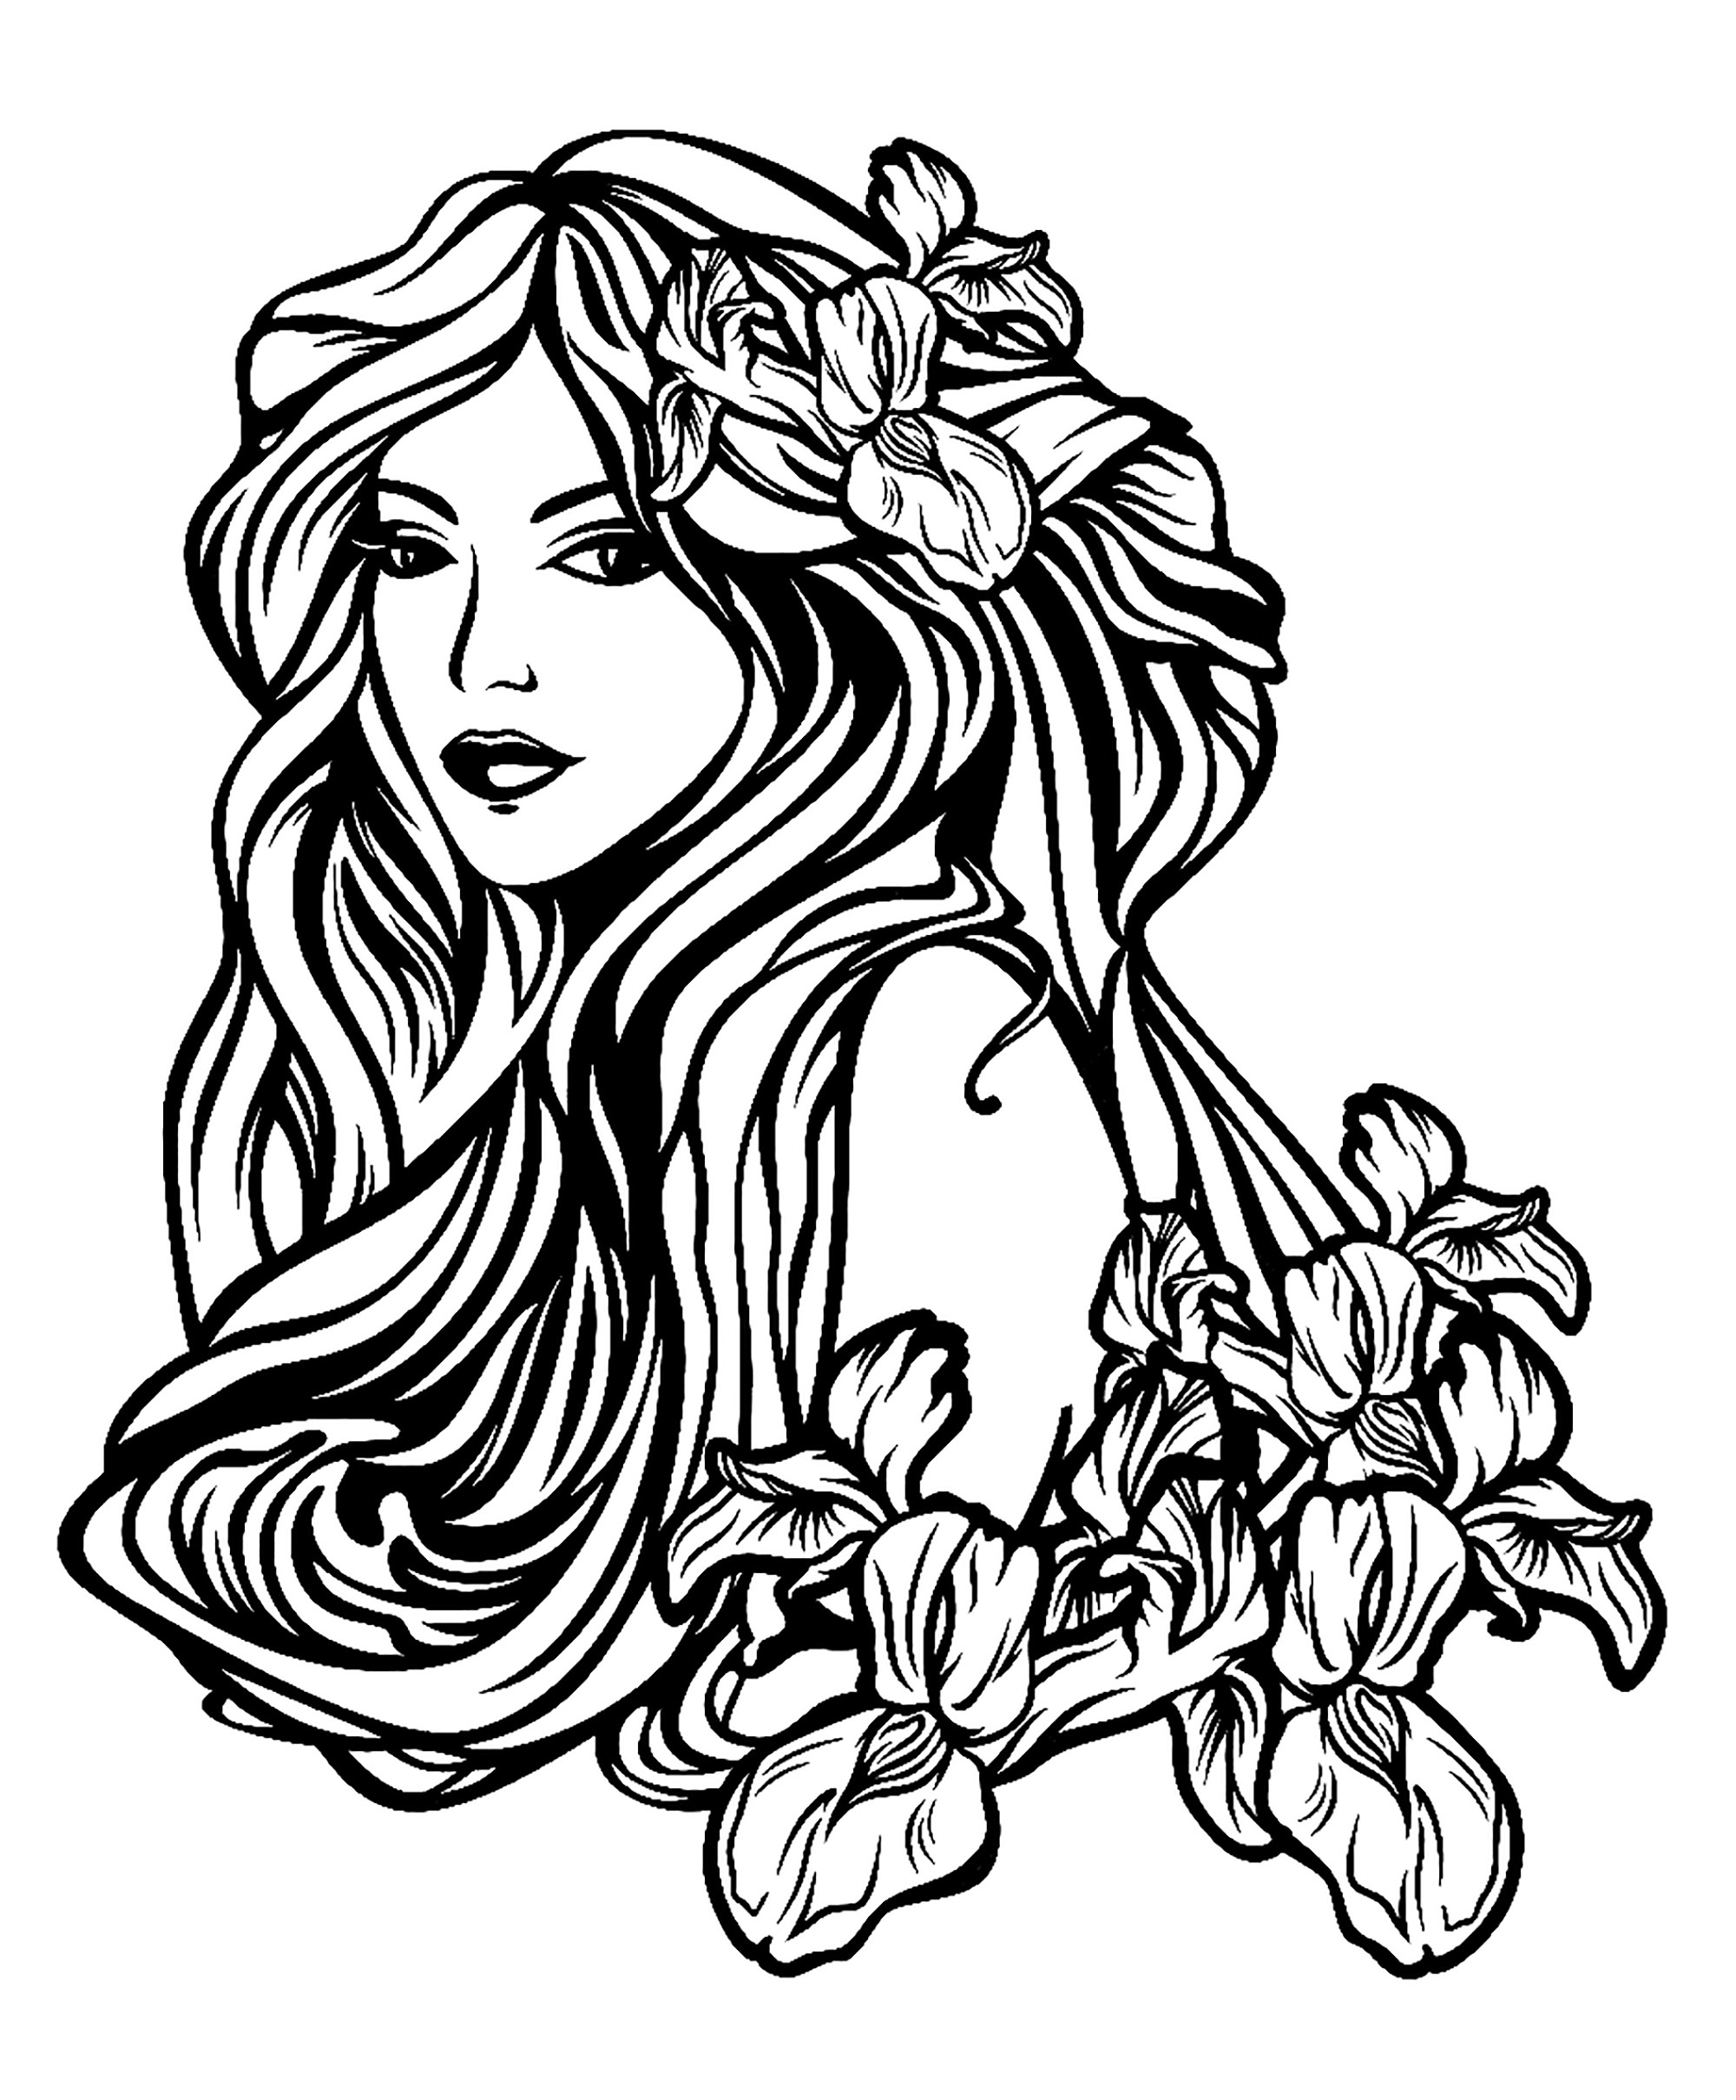 Mulher bonita com cabelo comprido entre flores de íris - estilo Art Nouveau, perfeito para uma tatuagem